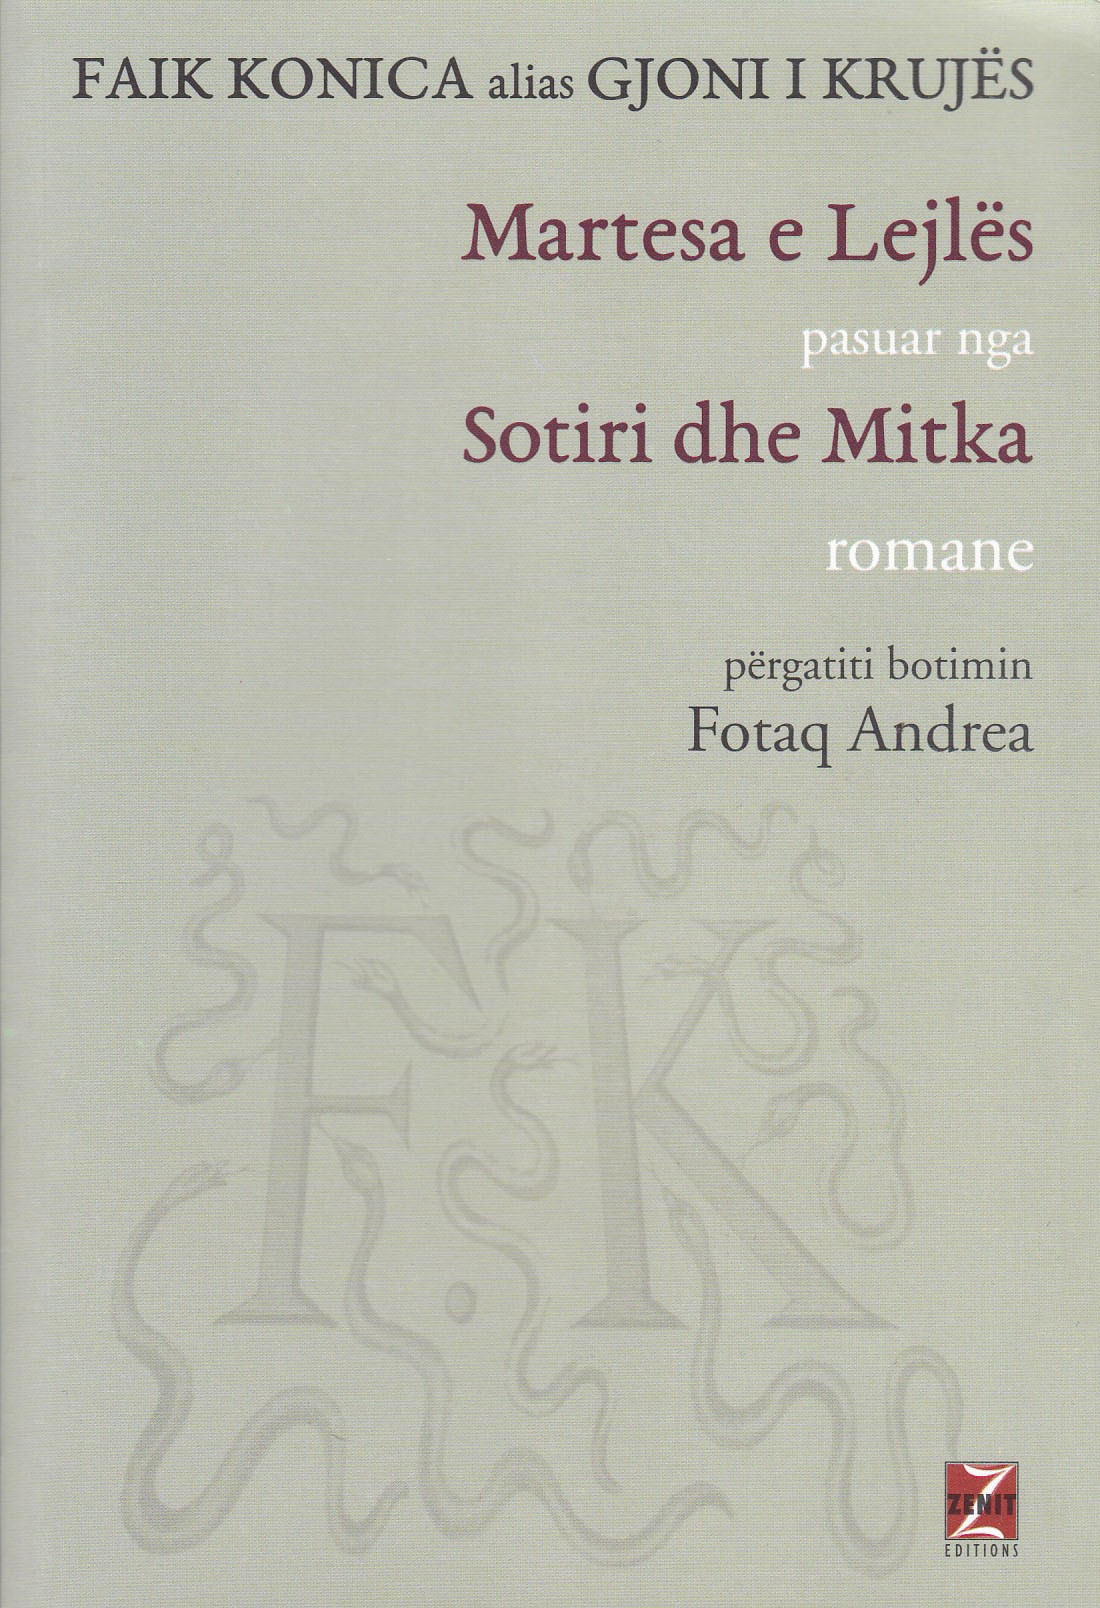 Martesa e Lejlës/Sotiri dhe Mitka